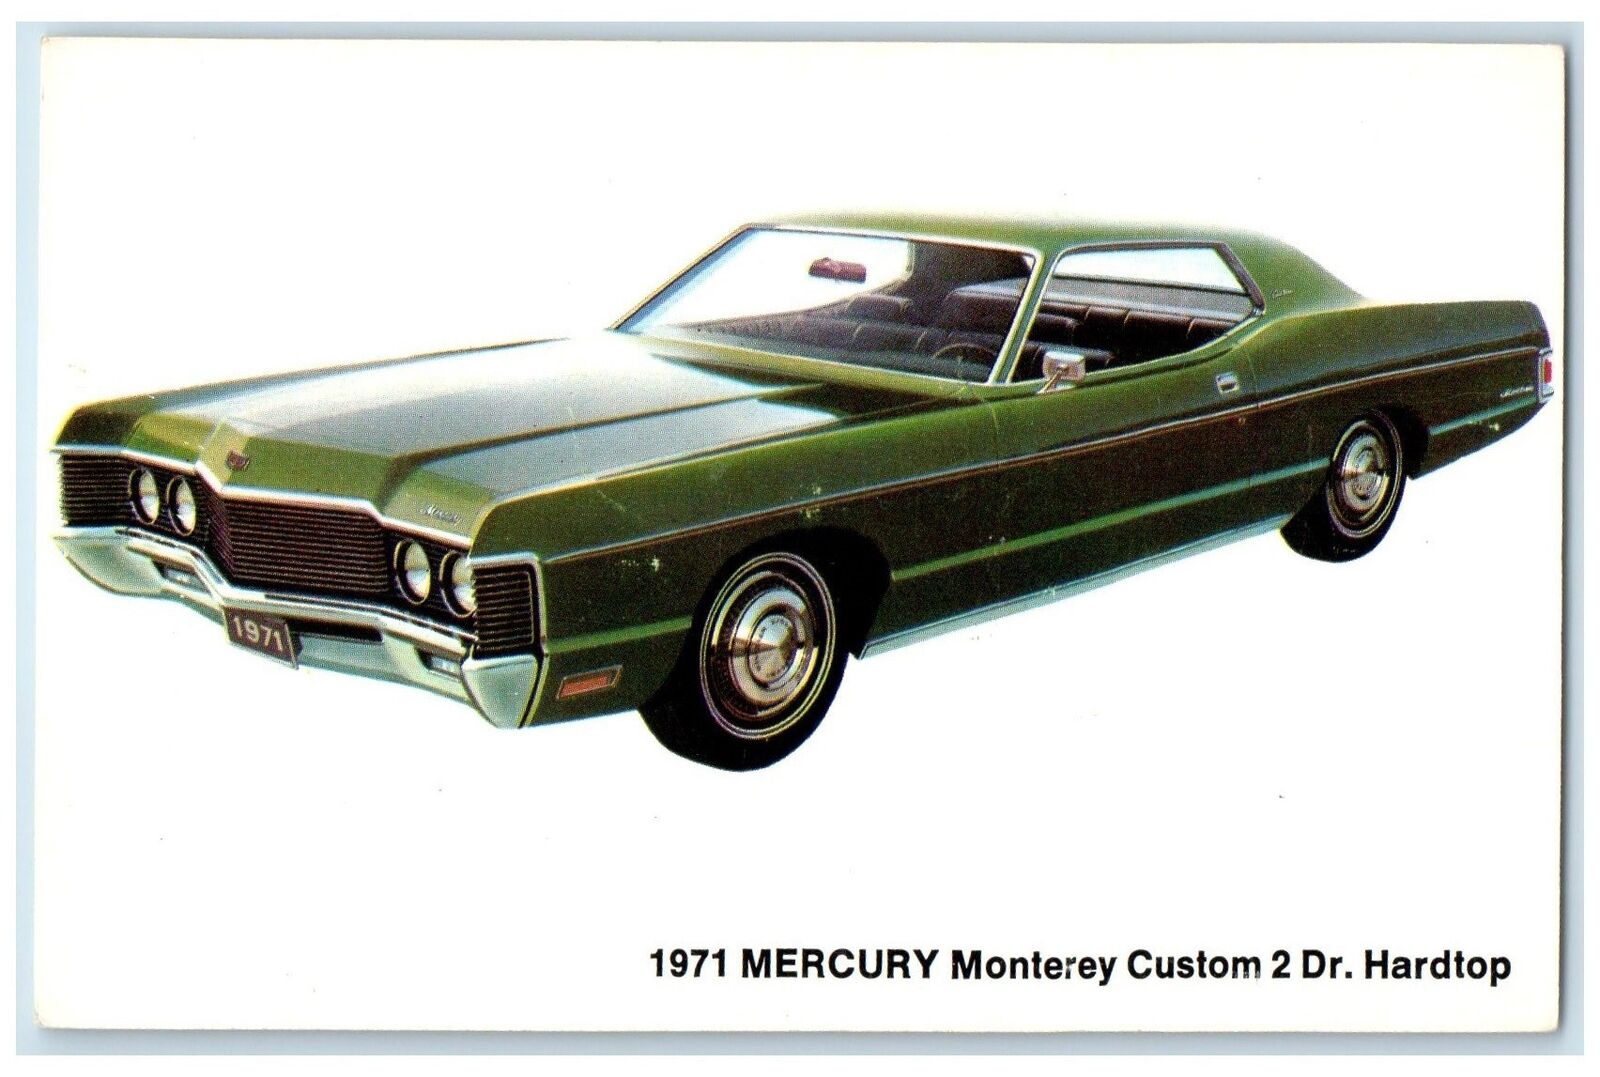 c1971 1971 Mercury Monterey Custom 2 Dr. Hardtop Waupaca Wisconsin Postcard